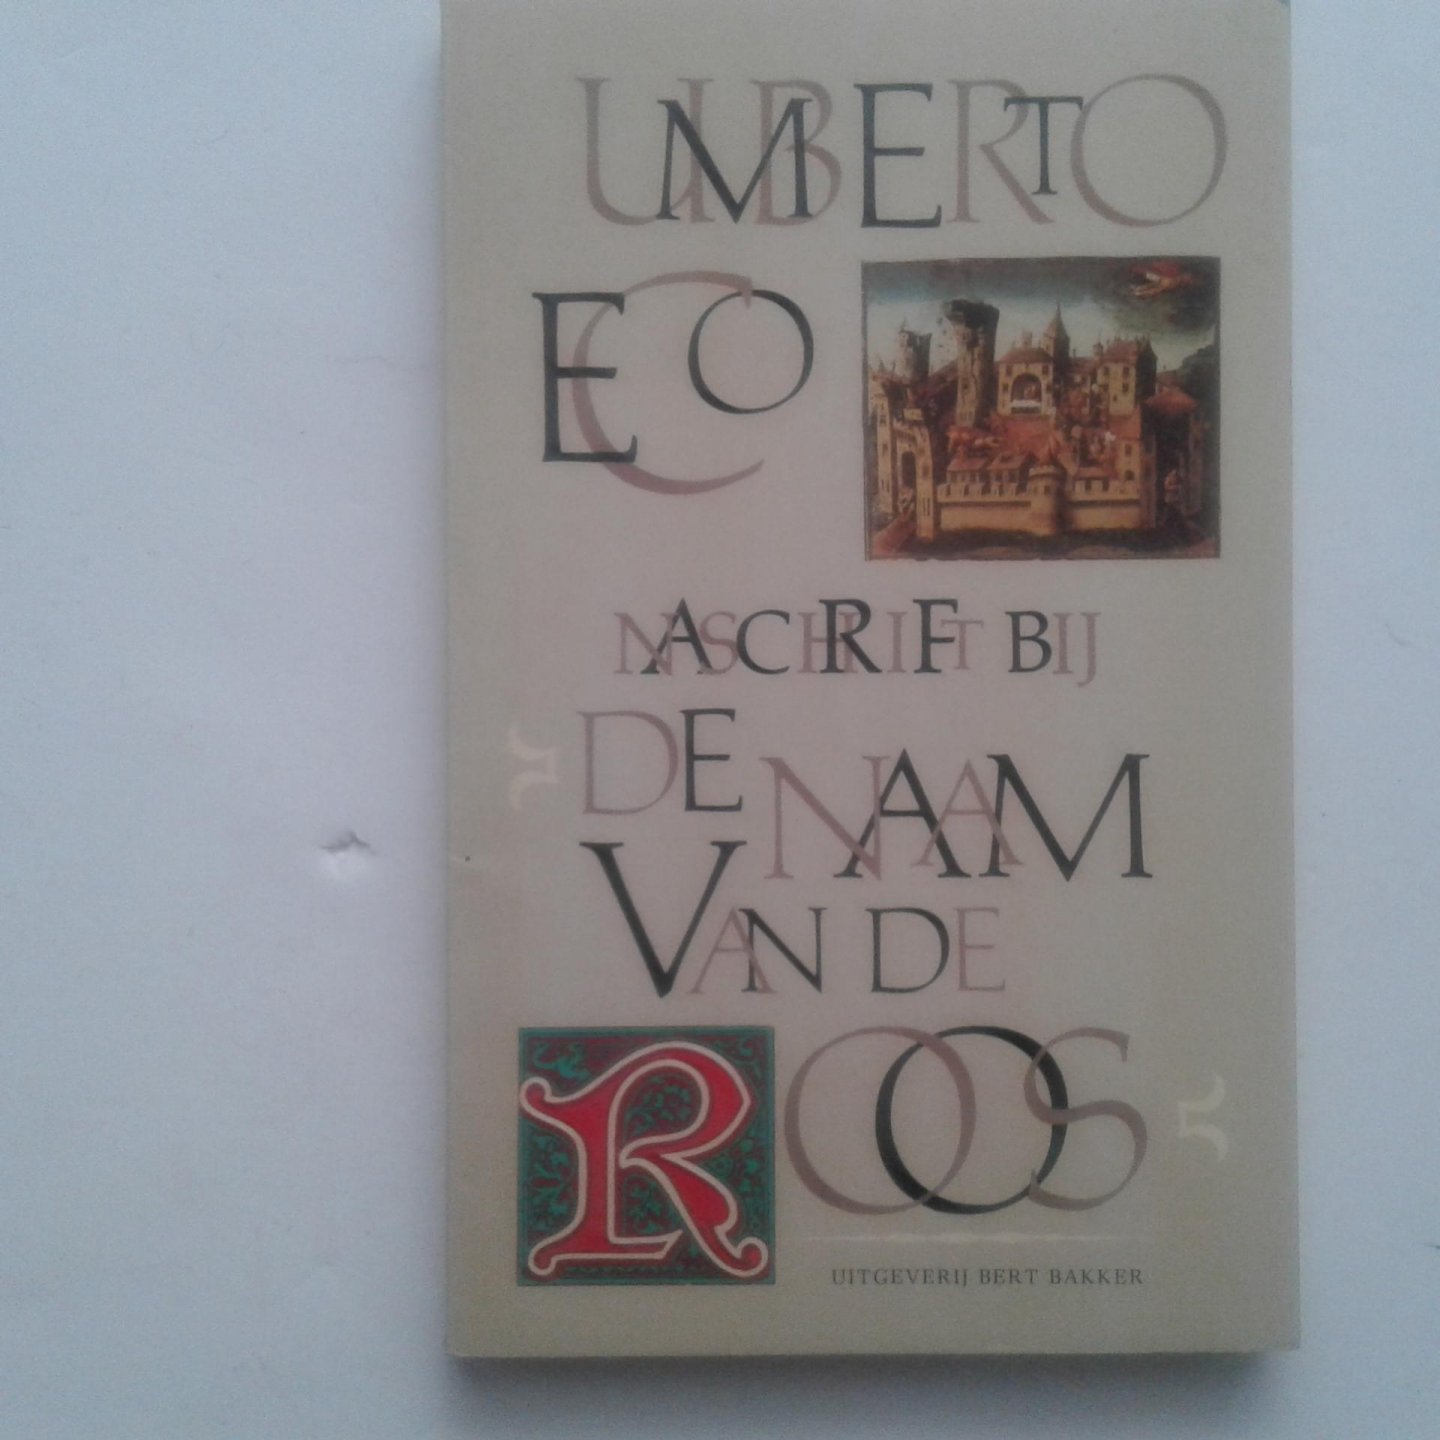 Eco, Umberto - Eco ; Naschrift bij de Naam van de Roos